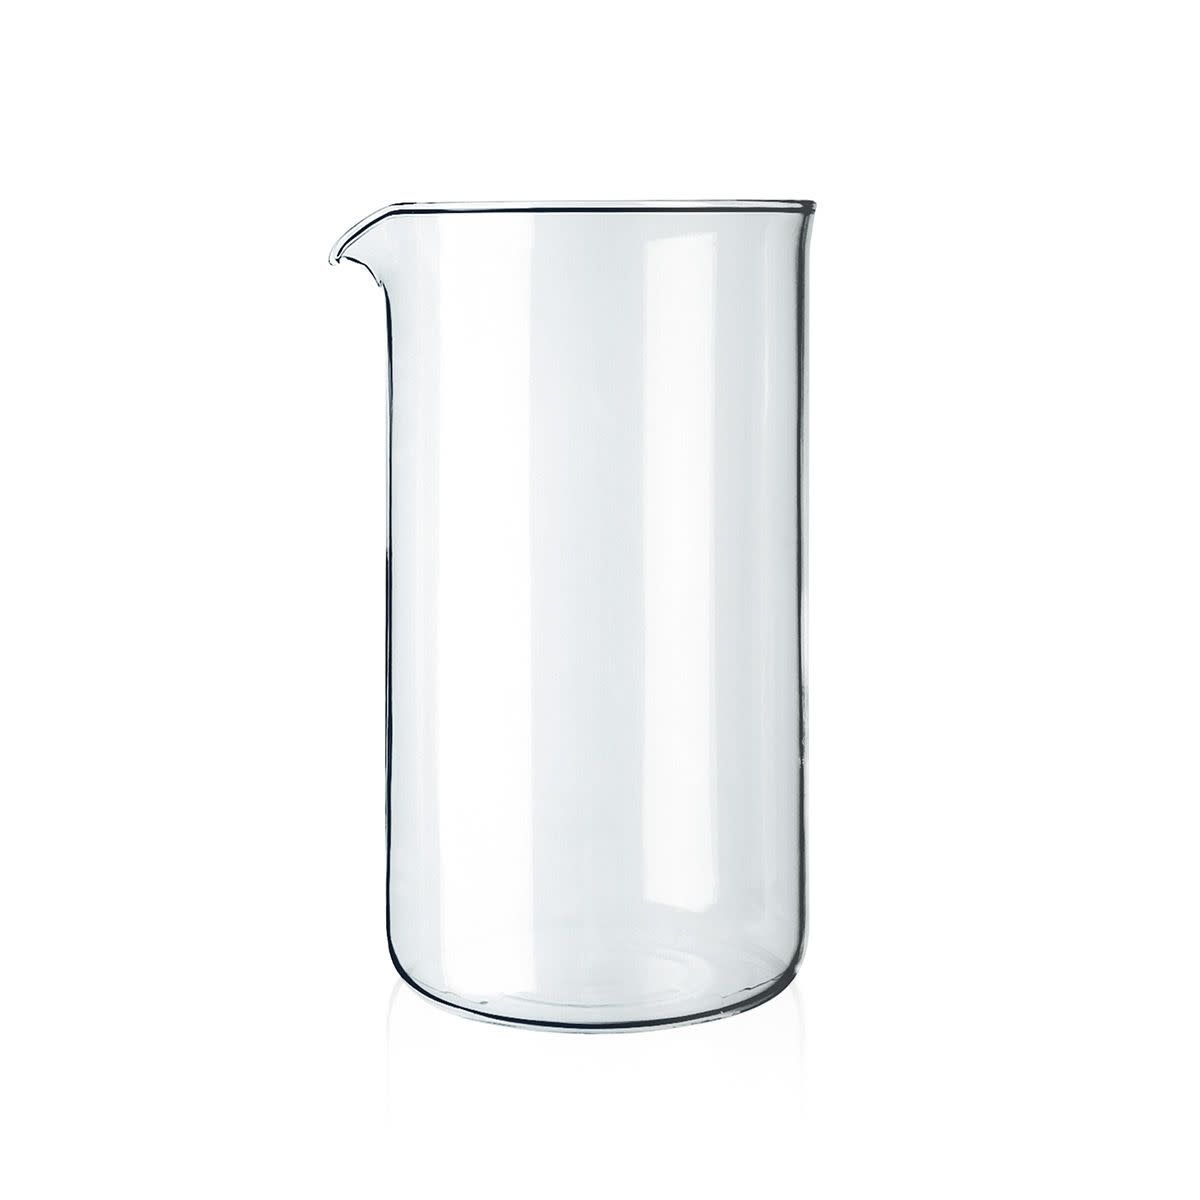 Bodum Spare Glass Carafe 8cup